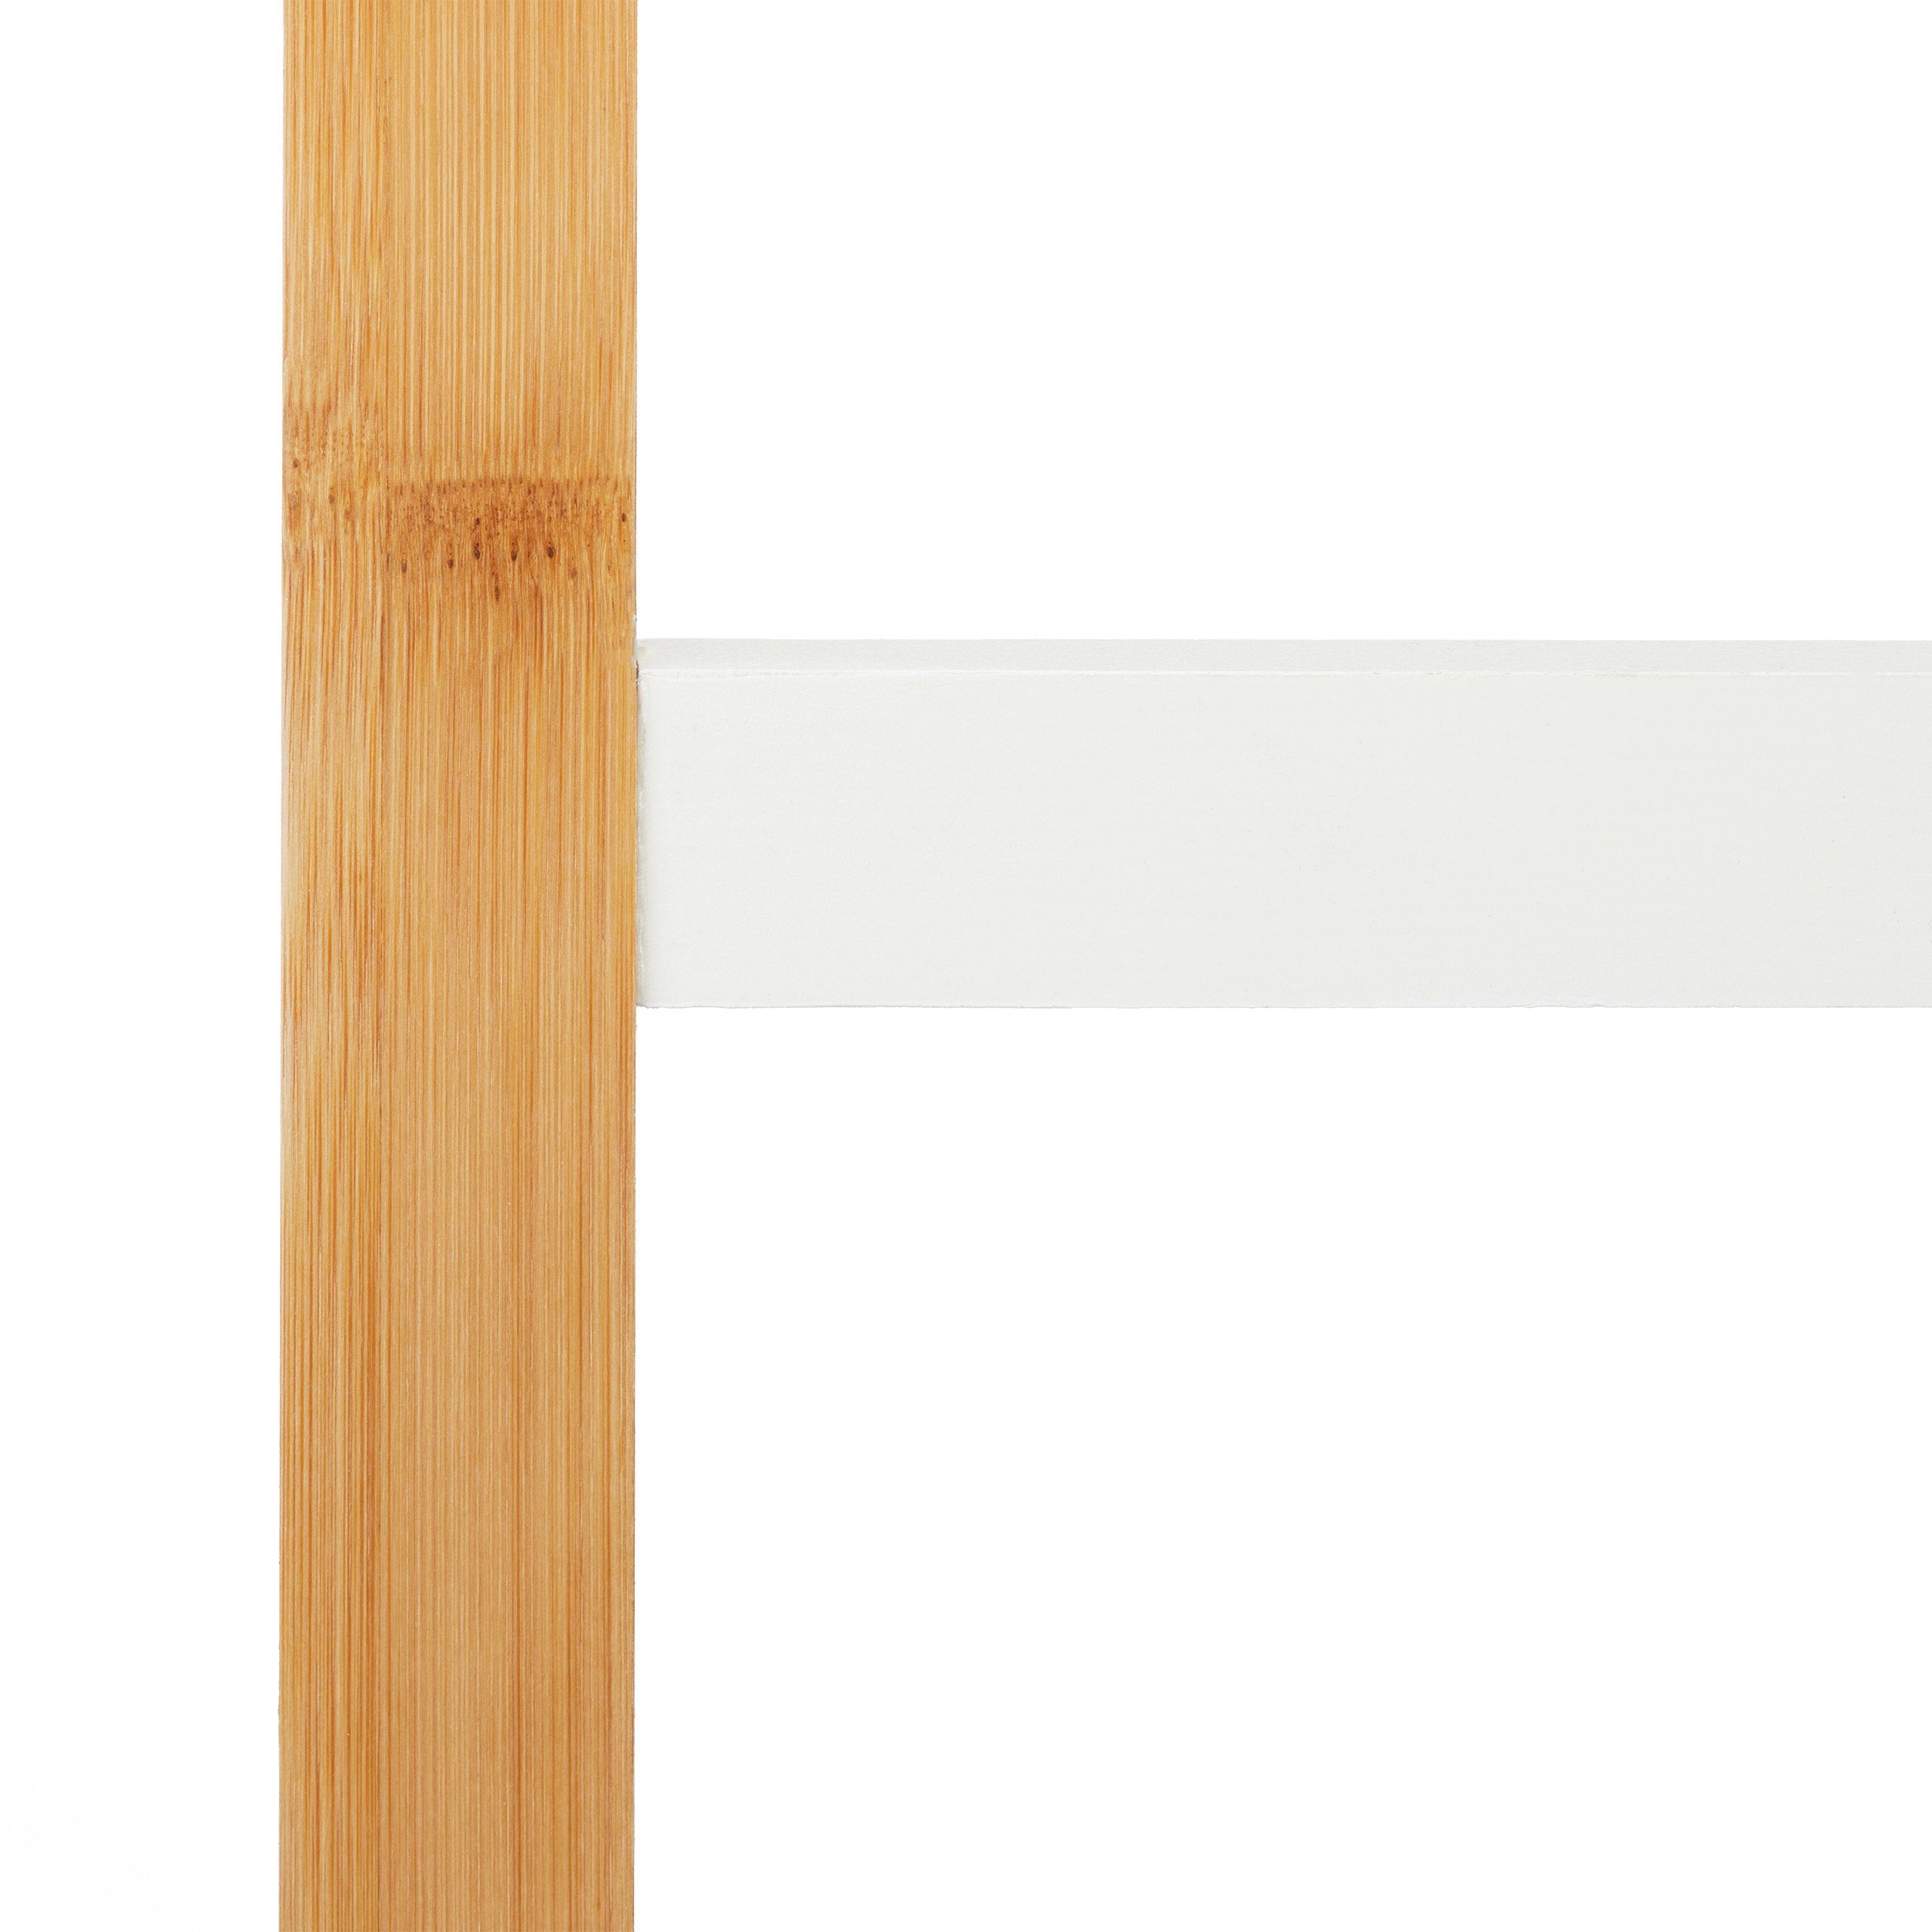 Bambus natur/weiß relaxdays Handtuchhalter Handtuchhalter